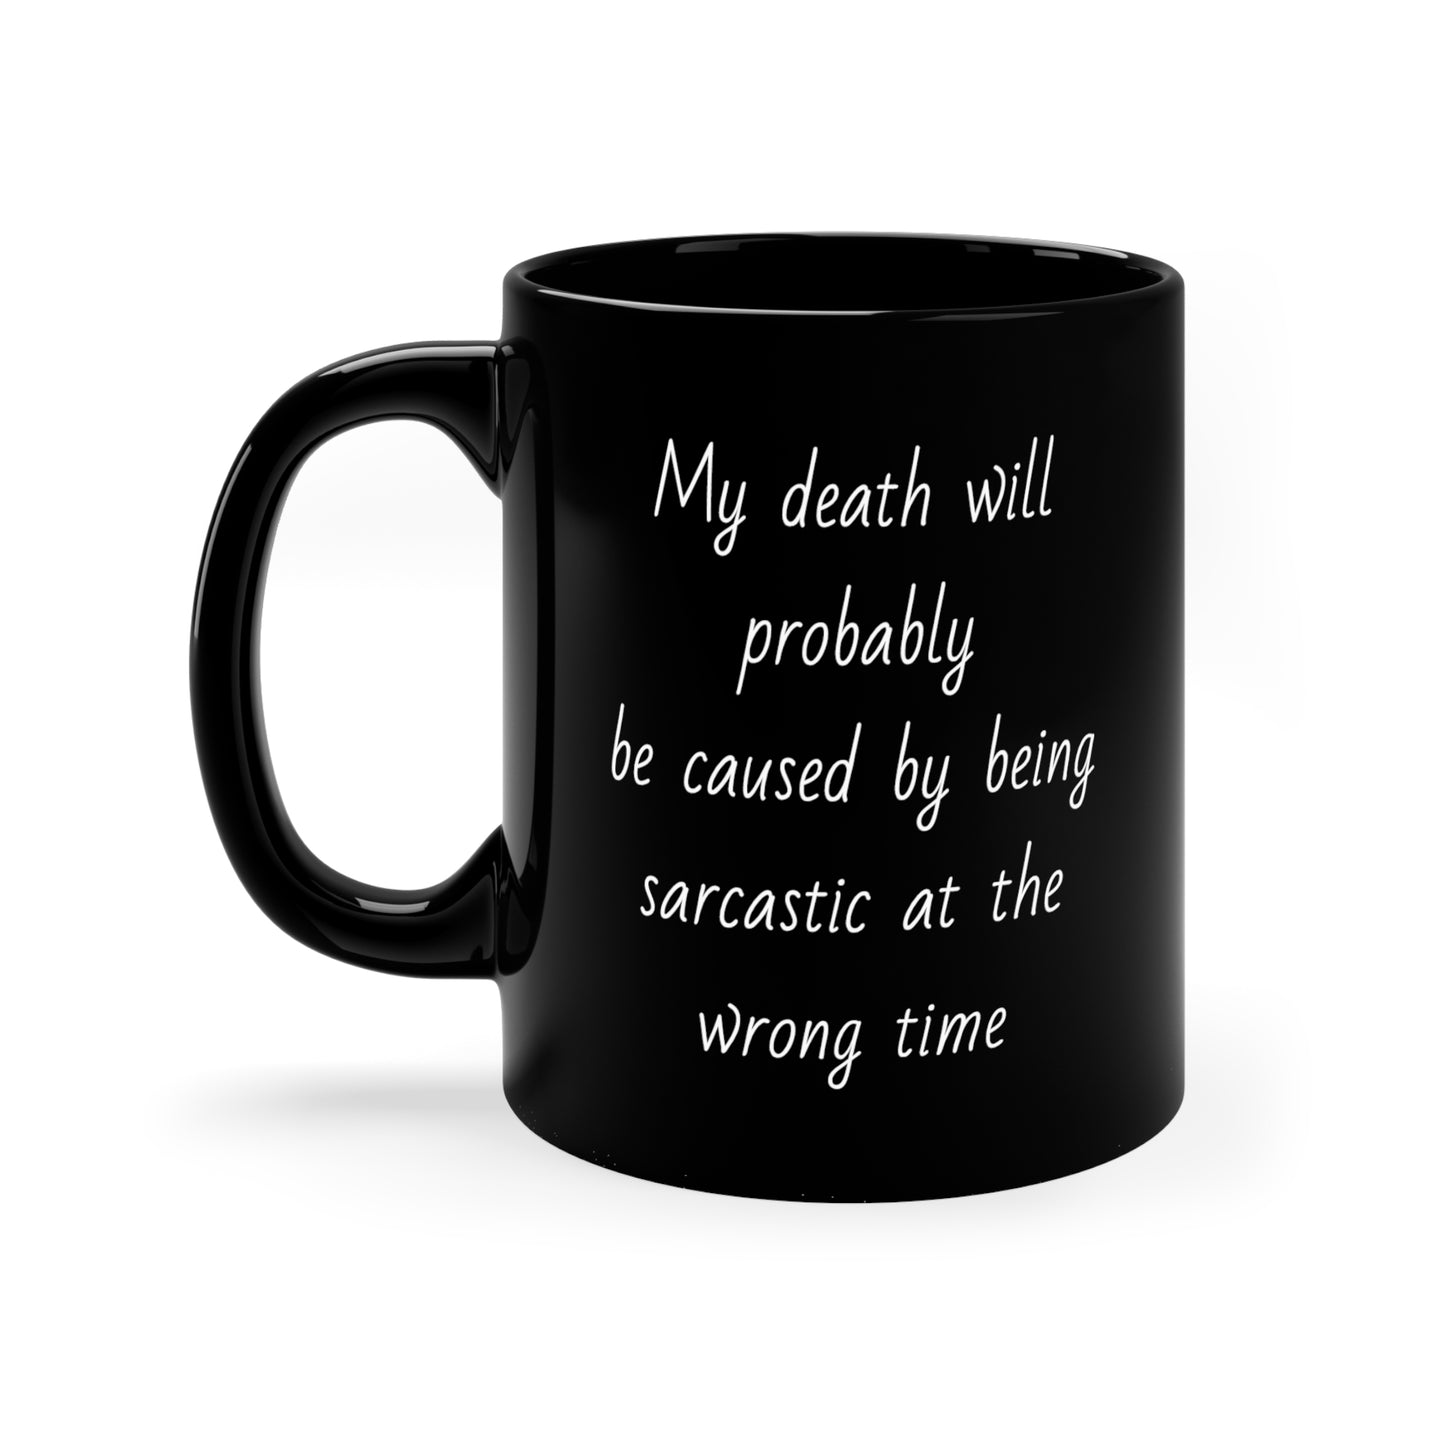 Muerte por sarcasmo - Taza de café negra, 11 oz